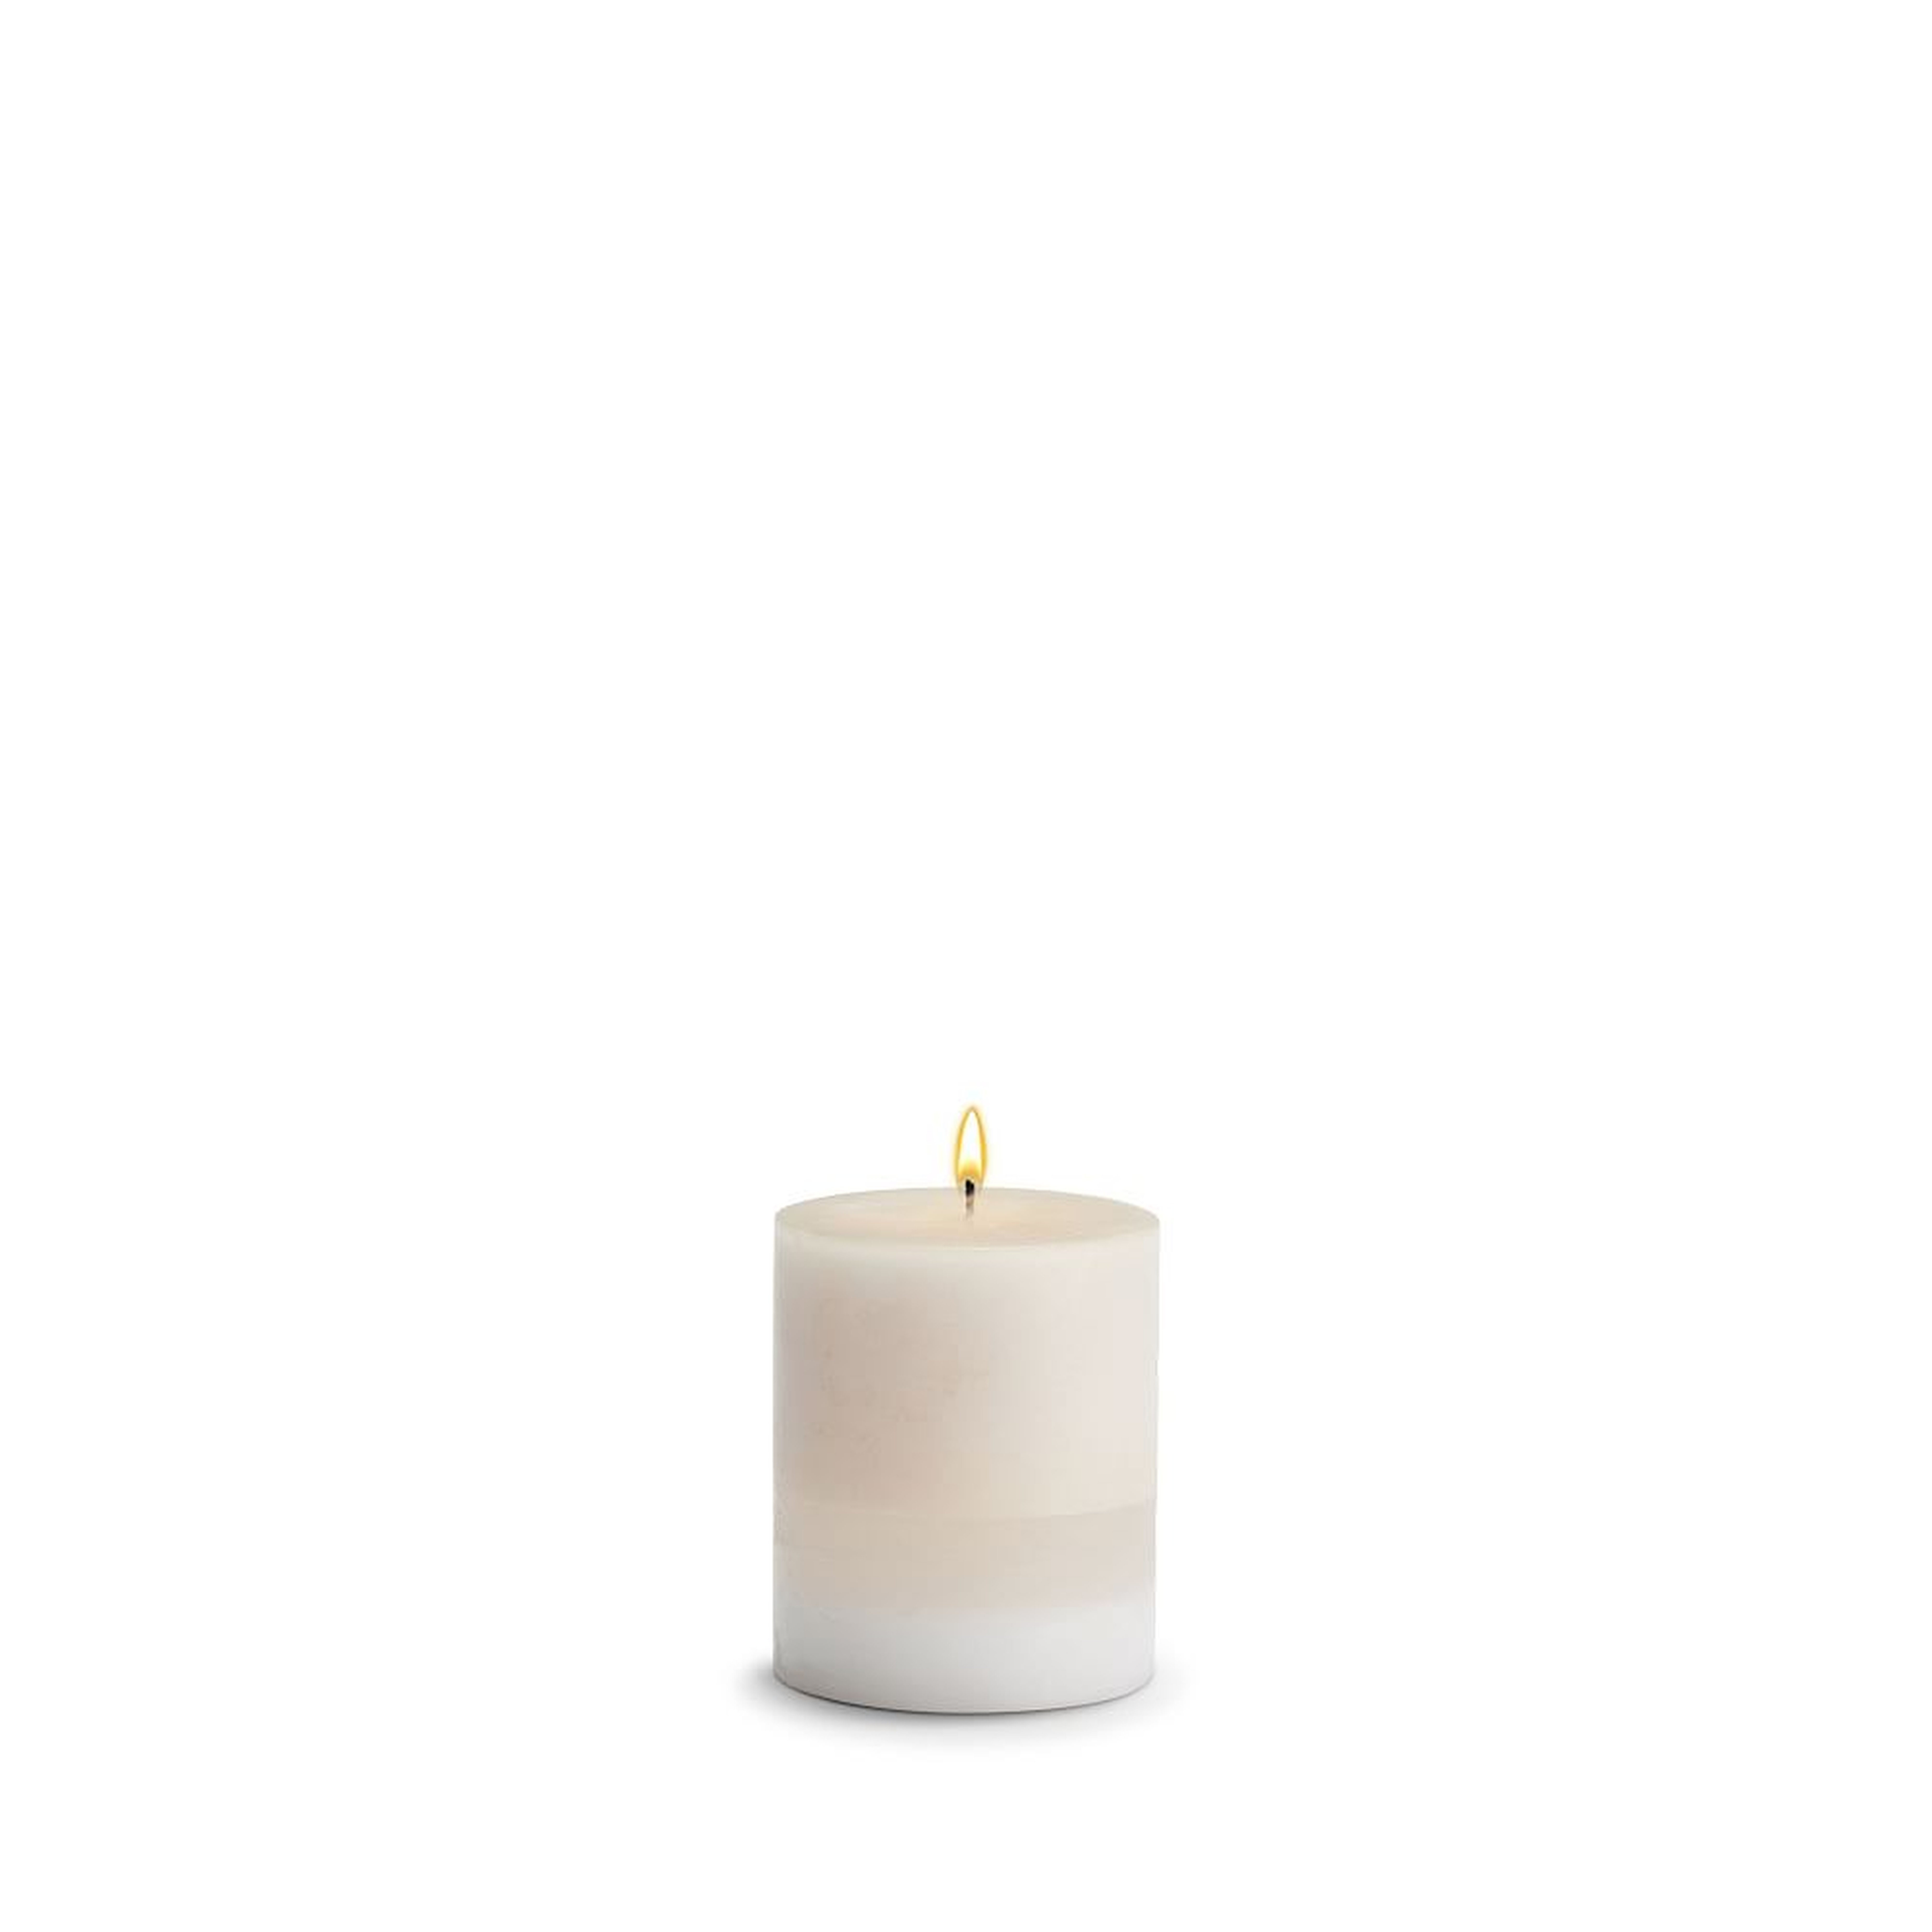 Pillar Candle, Wax, Amber Rose, 3"x3" - West Elm